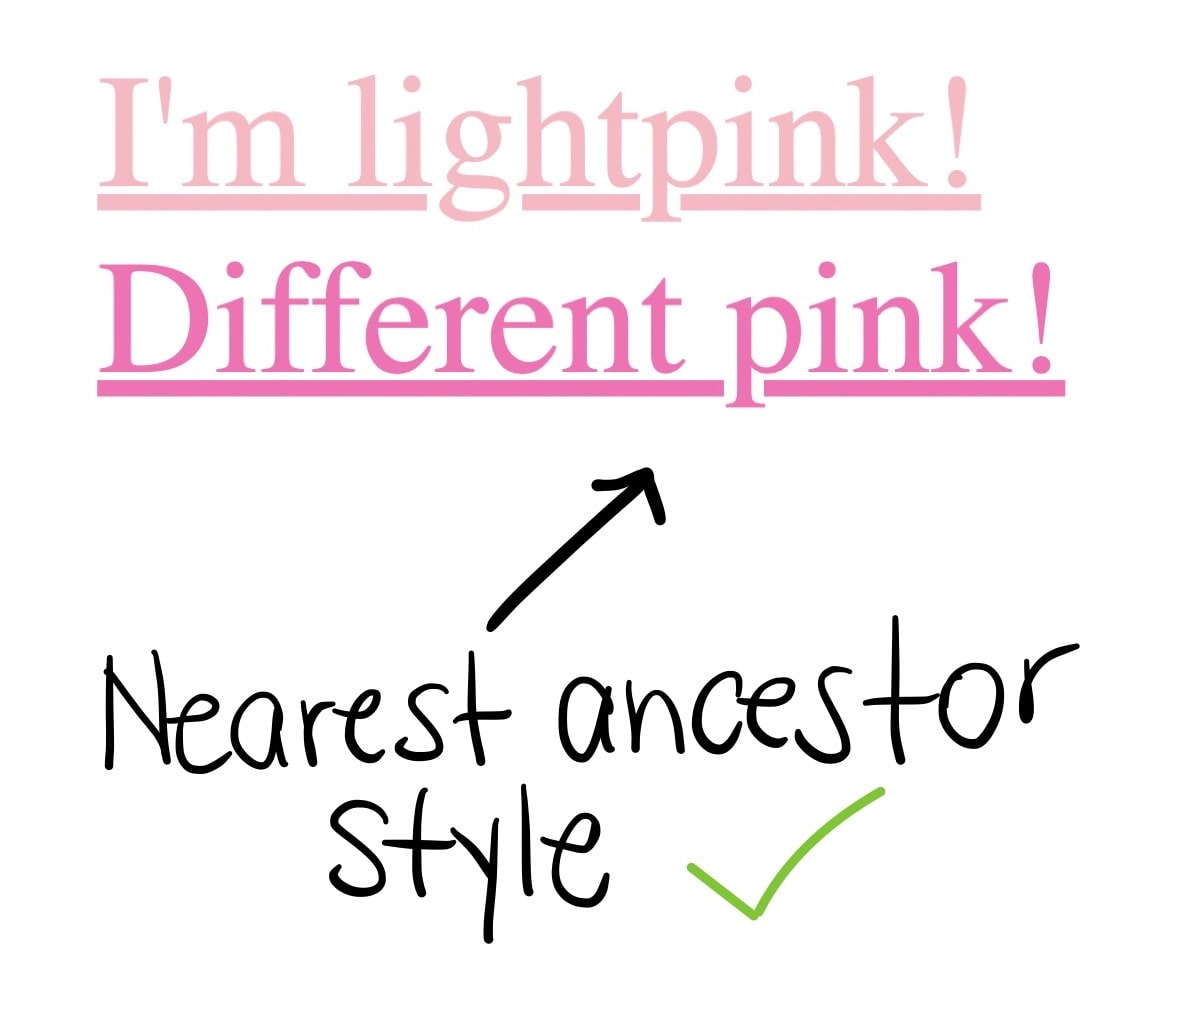 2 つのリンク。1 つ目のリンクには「異なるピンク」と書いてある。2 つ目のリンクはより濃いピンクで、リンクテキストに最も近い祖先スタイルの下に緑色のチェックマークがある。